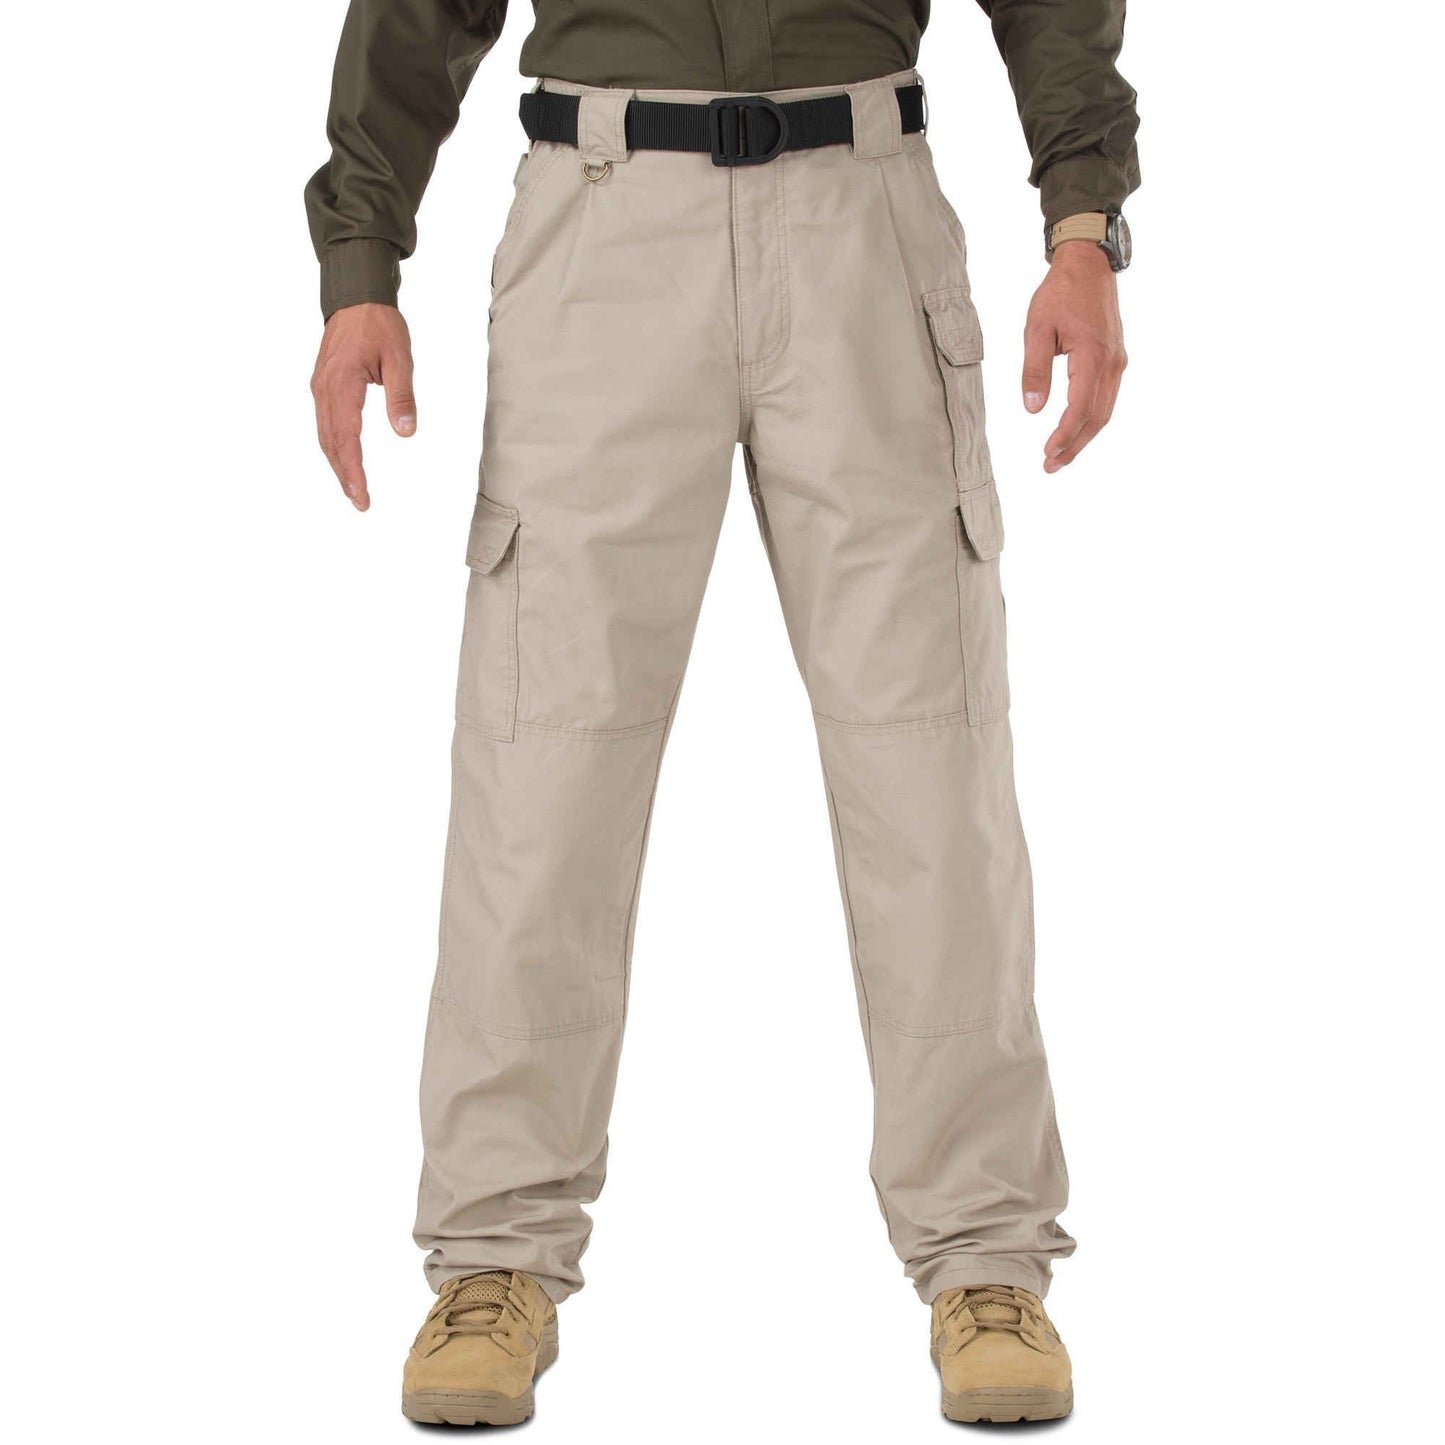 5.11 Tactical Pants - Khaki Tactical Distributors Ltd New Zealand